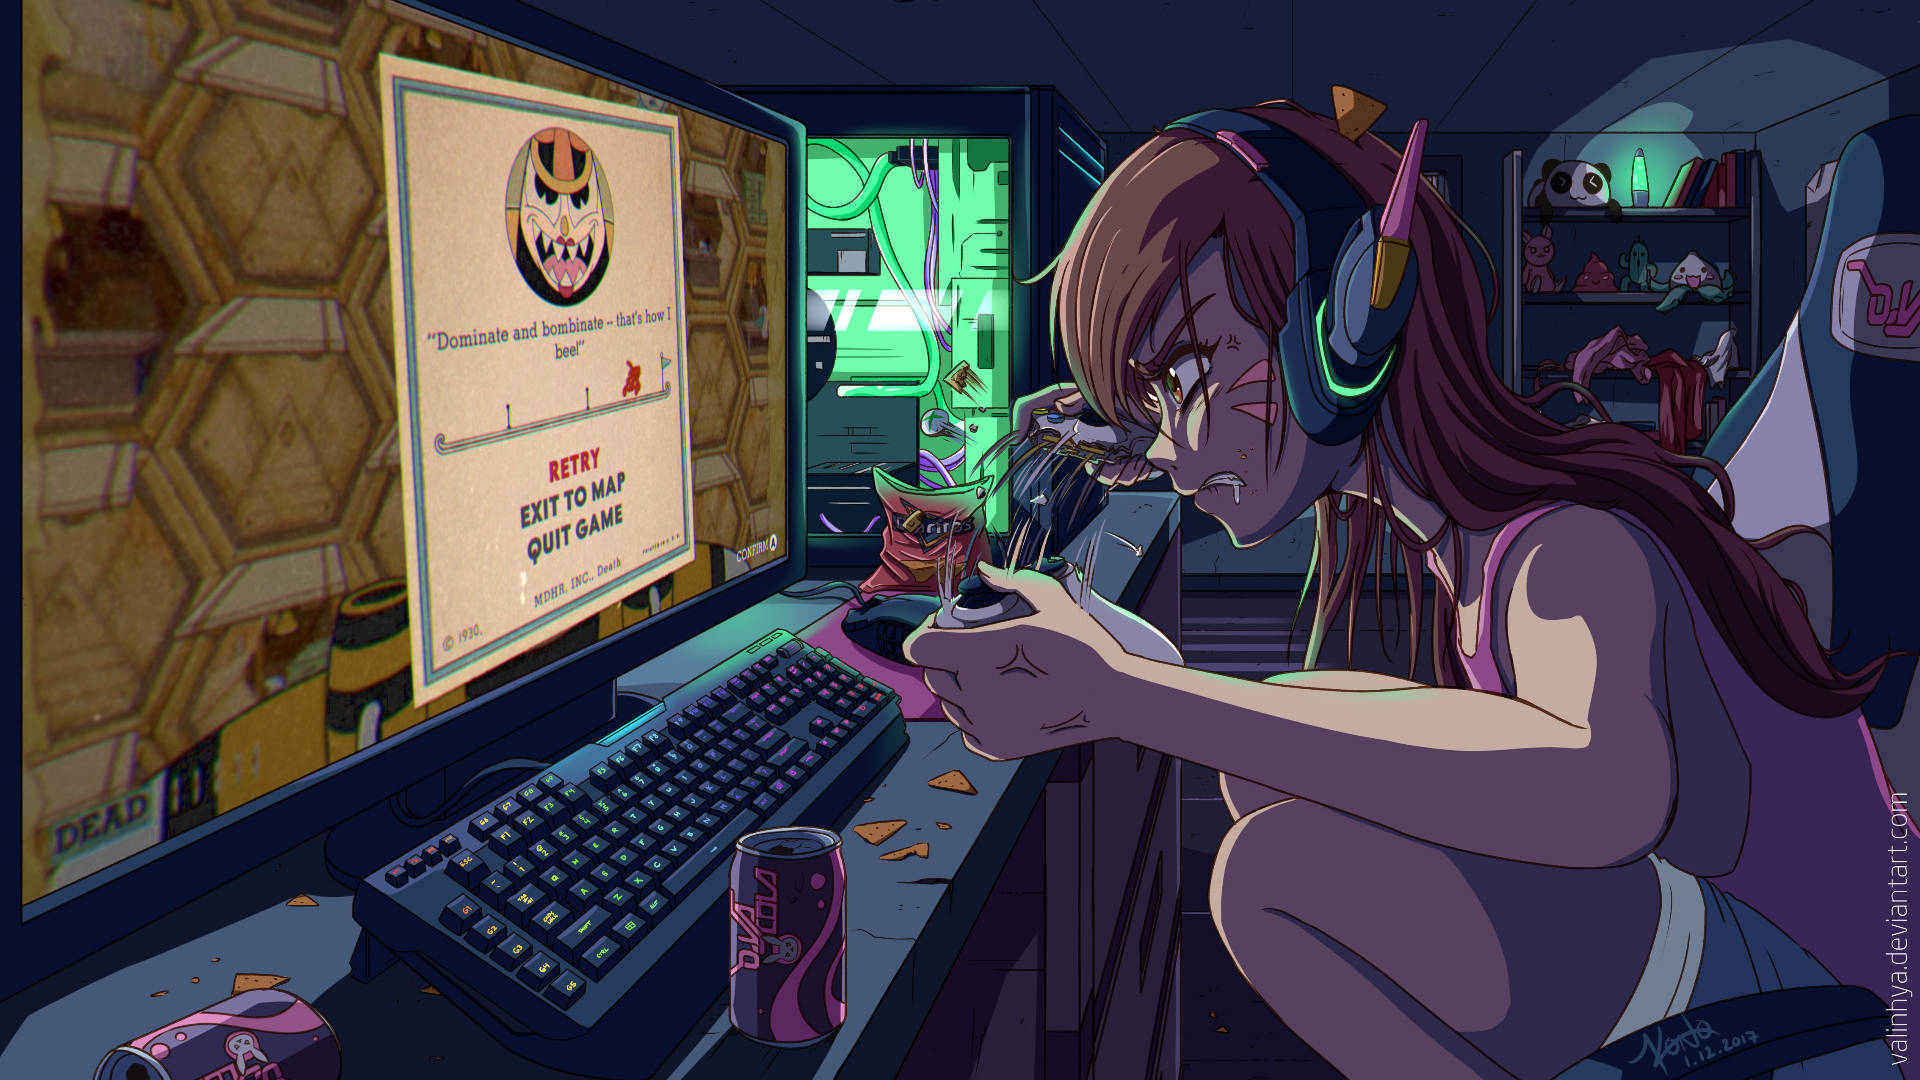 Caption: Gamer's Paradise: D.va Themed Gaming Desk